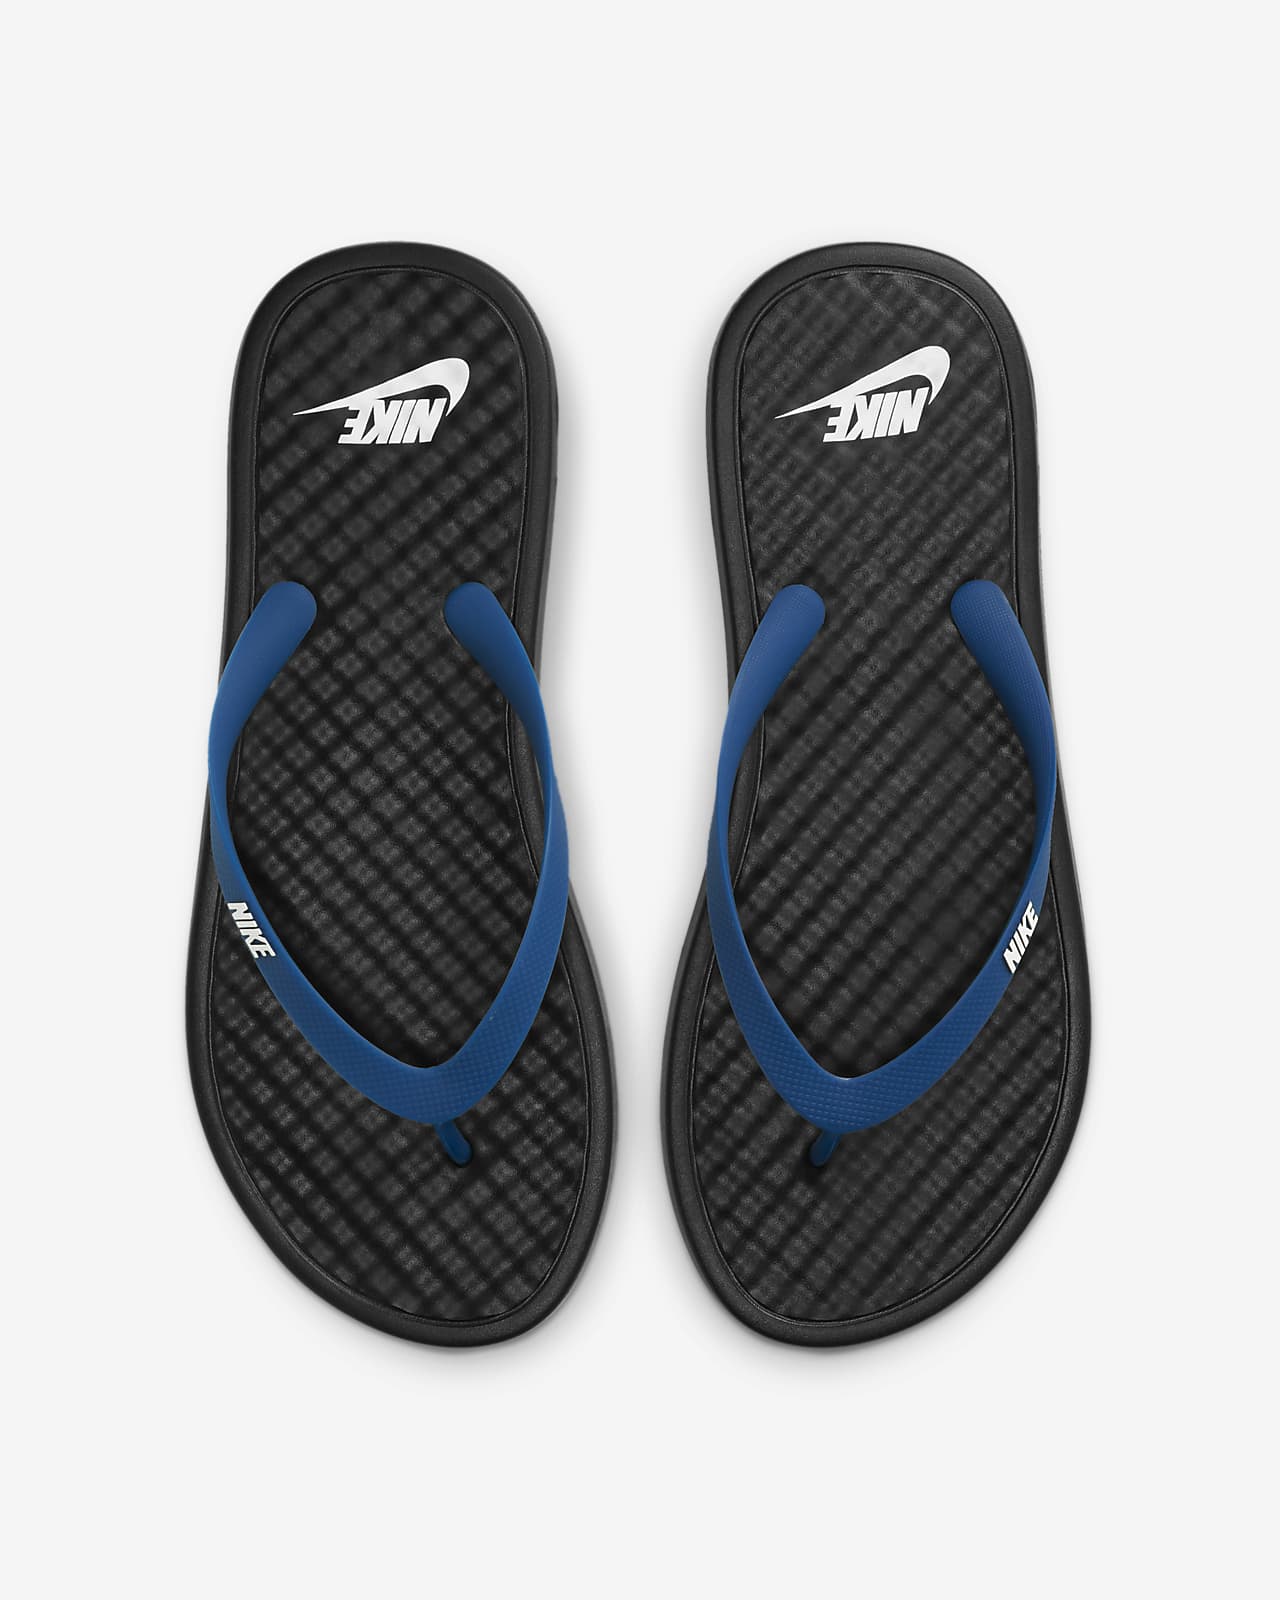 Nike Women's On Deck Flip Flop Sandal